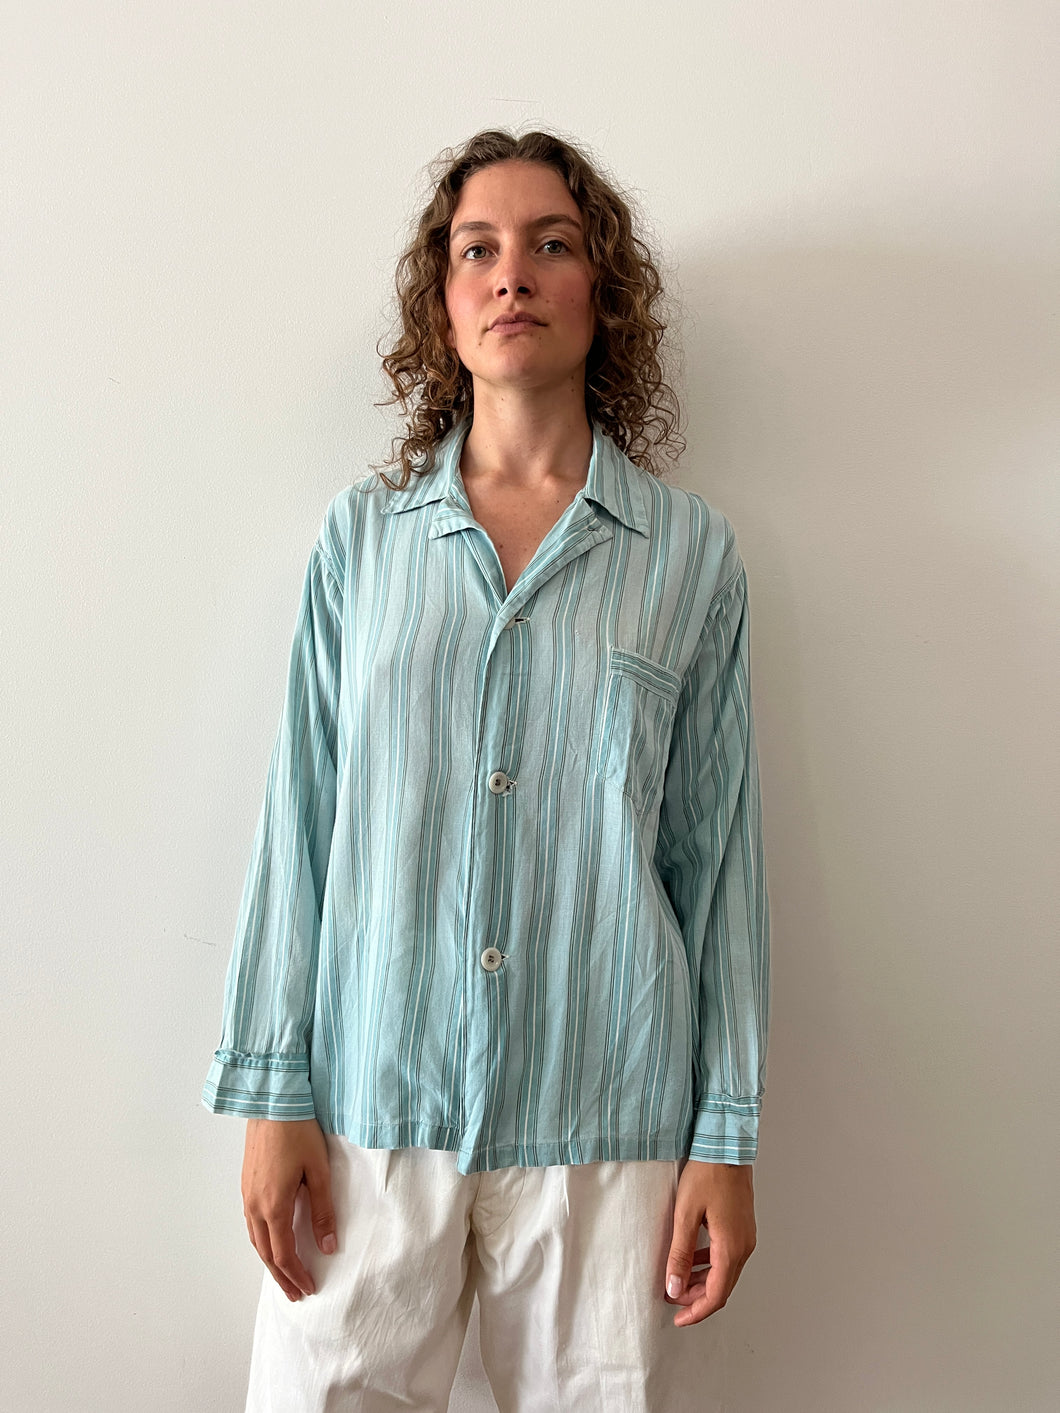 50s Striped Cotton PJ Shirt